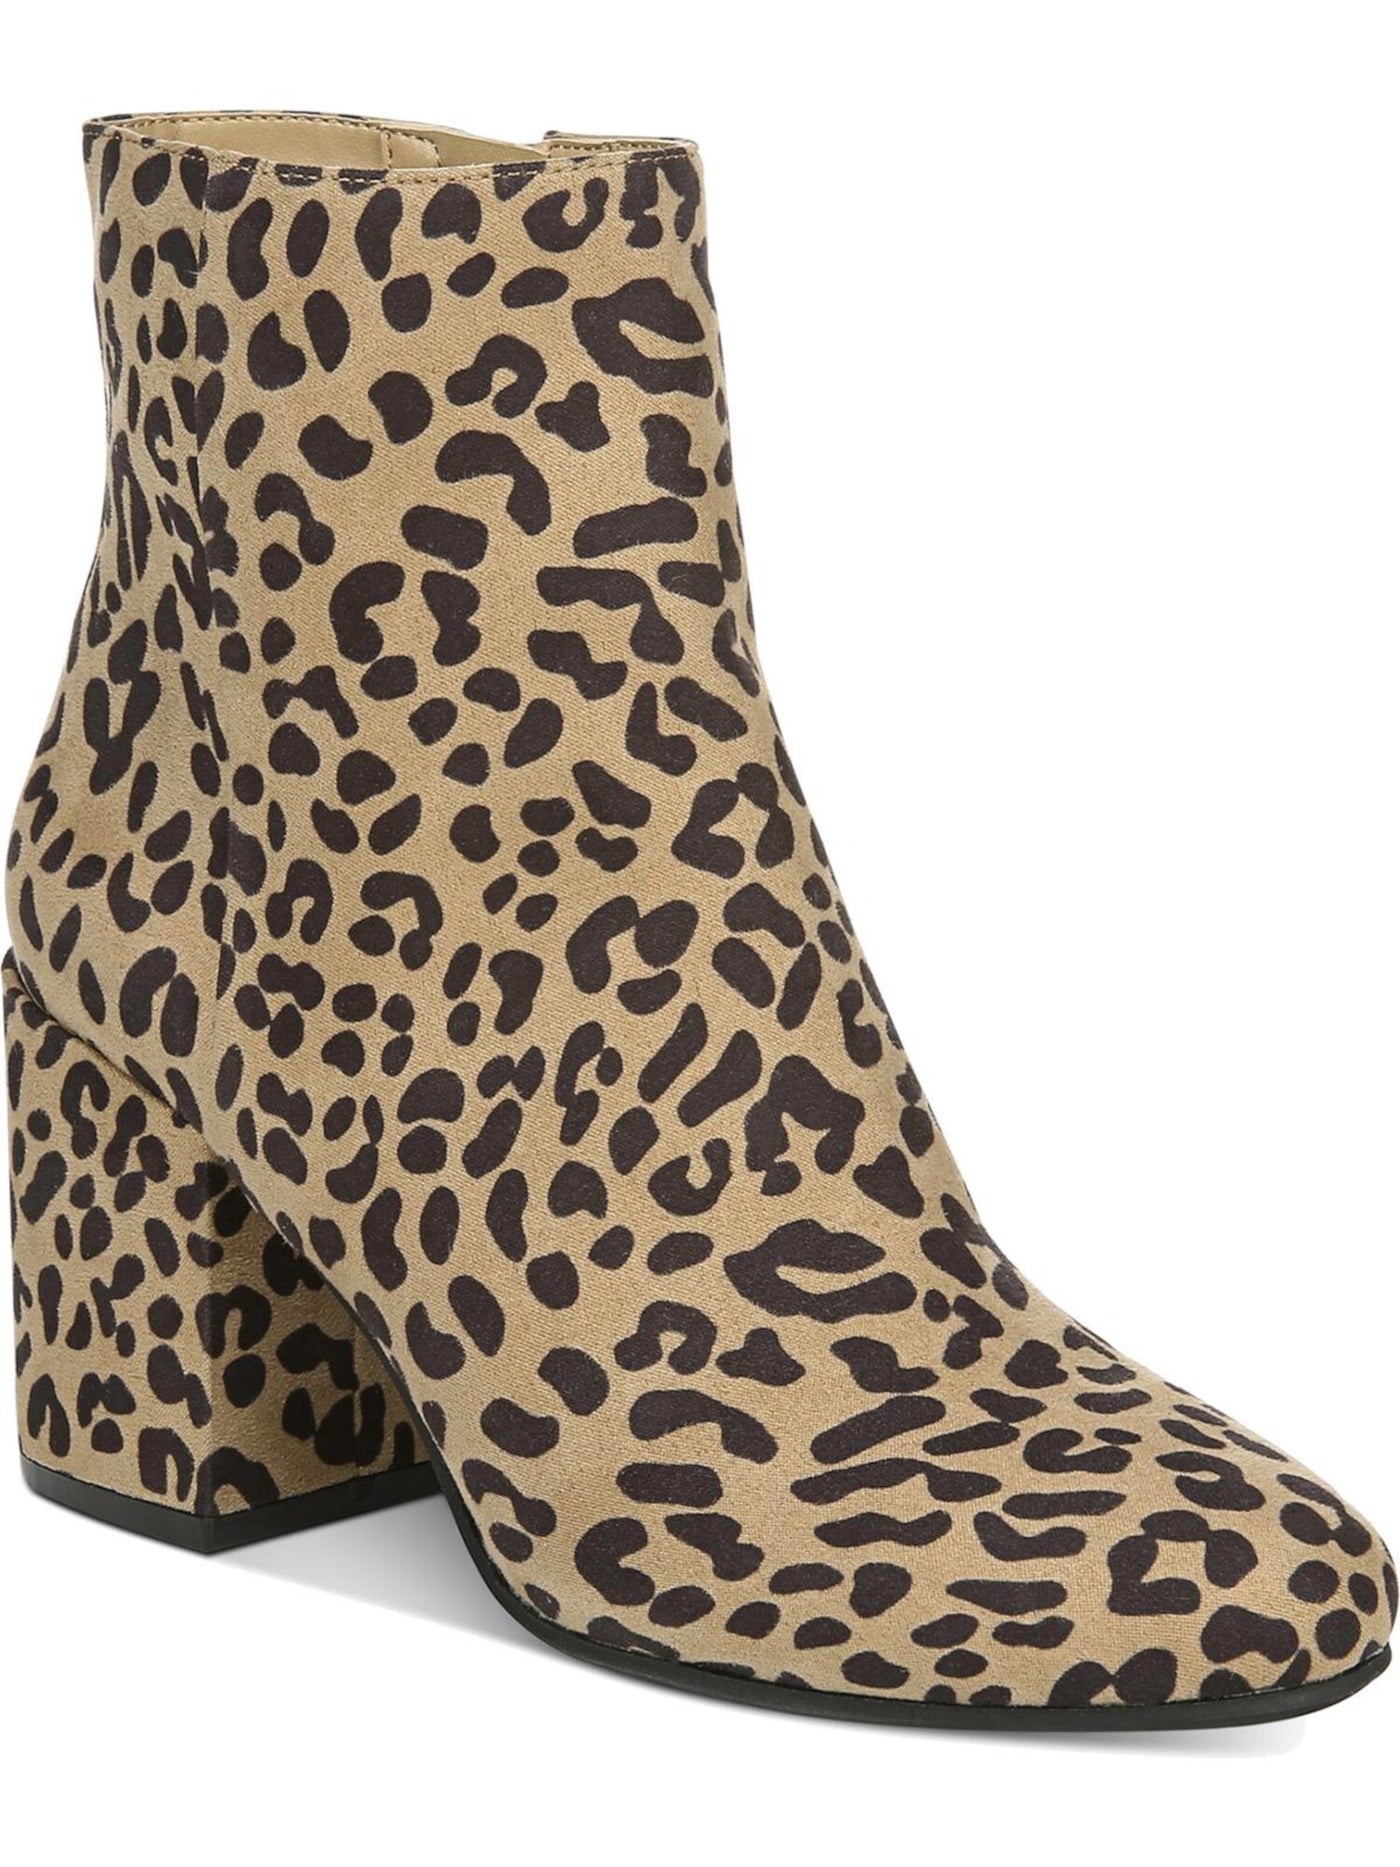 BAR III Womens Brown Leopard Print Comfort Gatlin Almond Toe Block Heel Zip-Up Booties 9 M